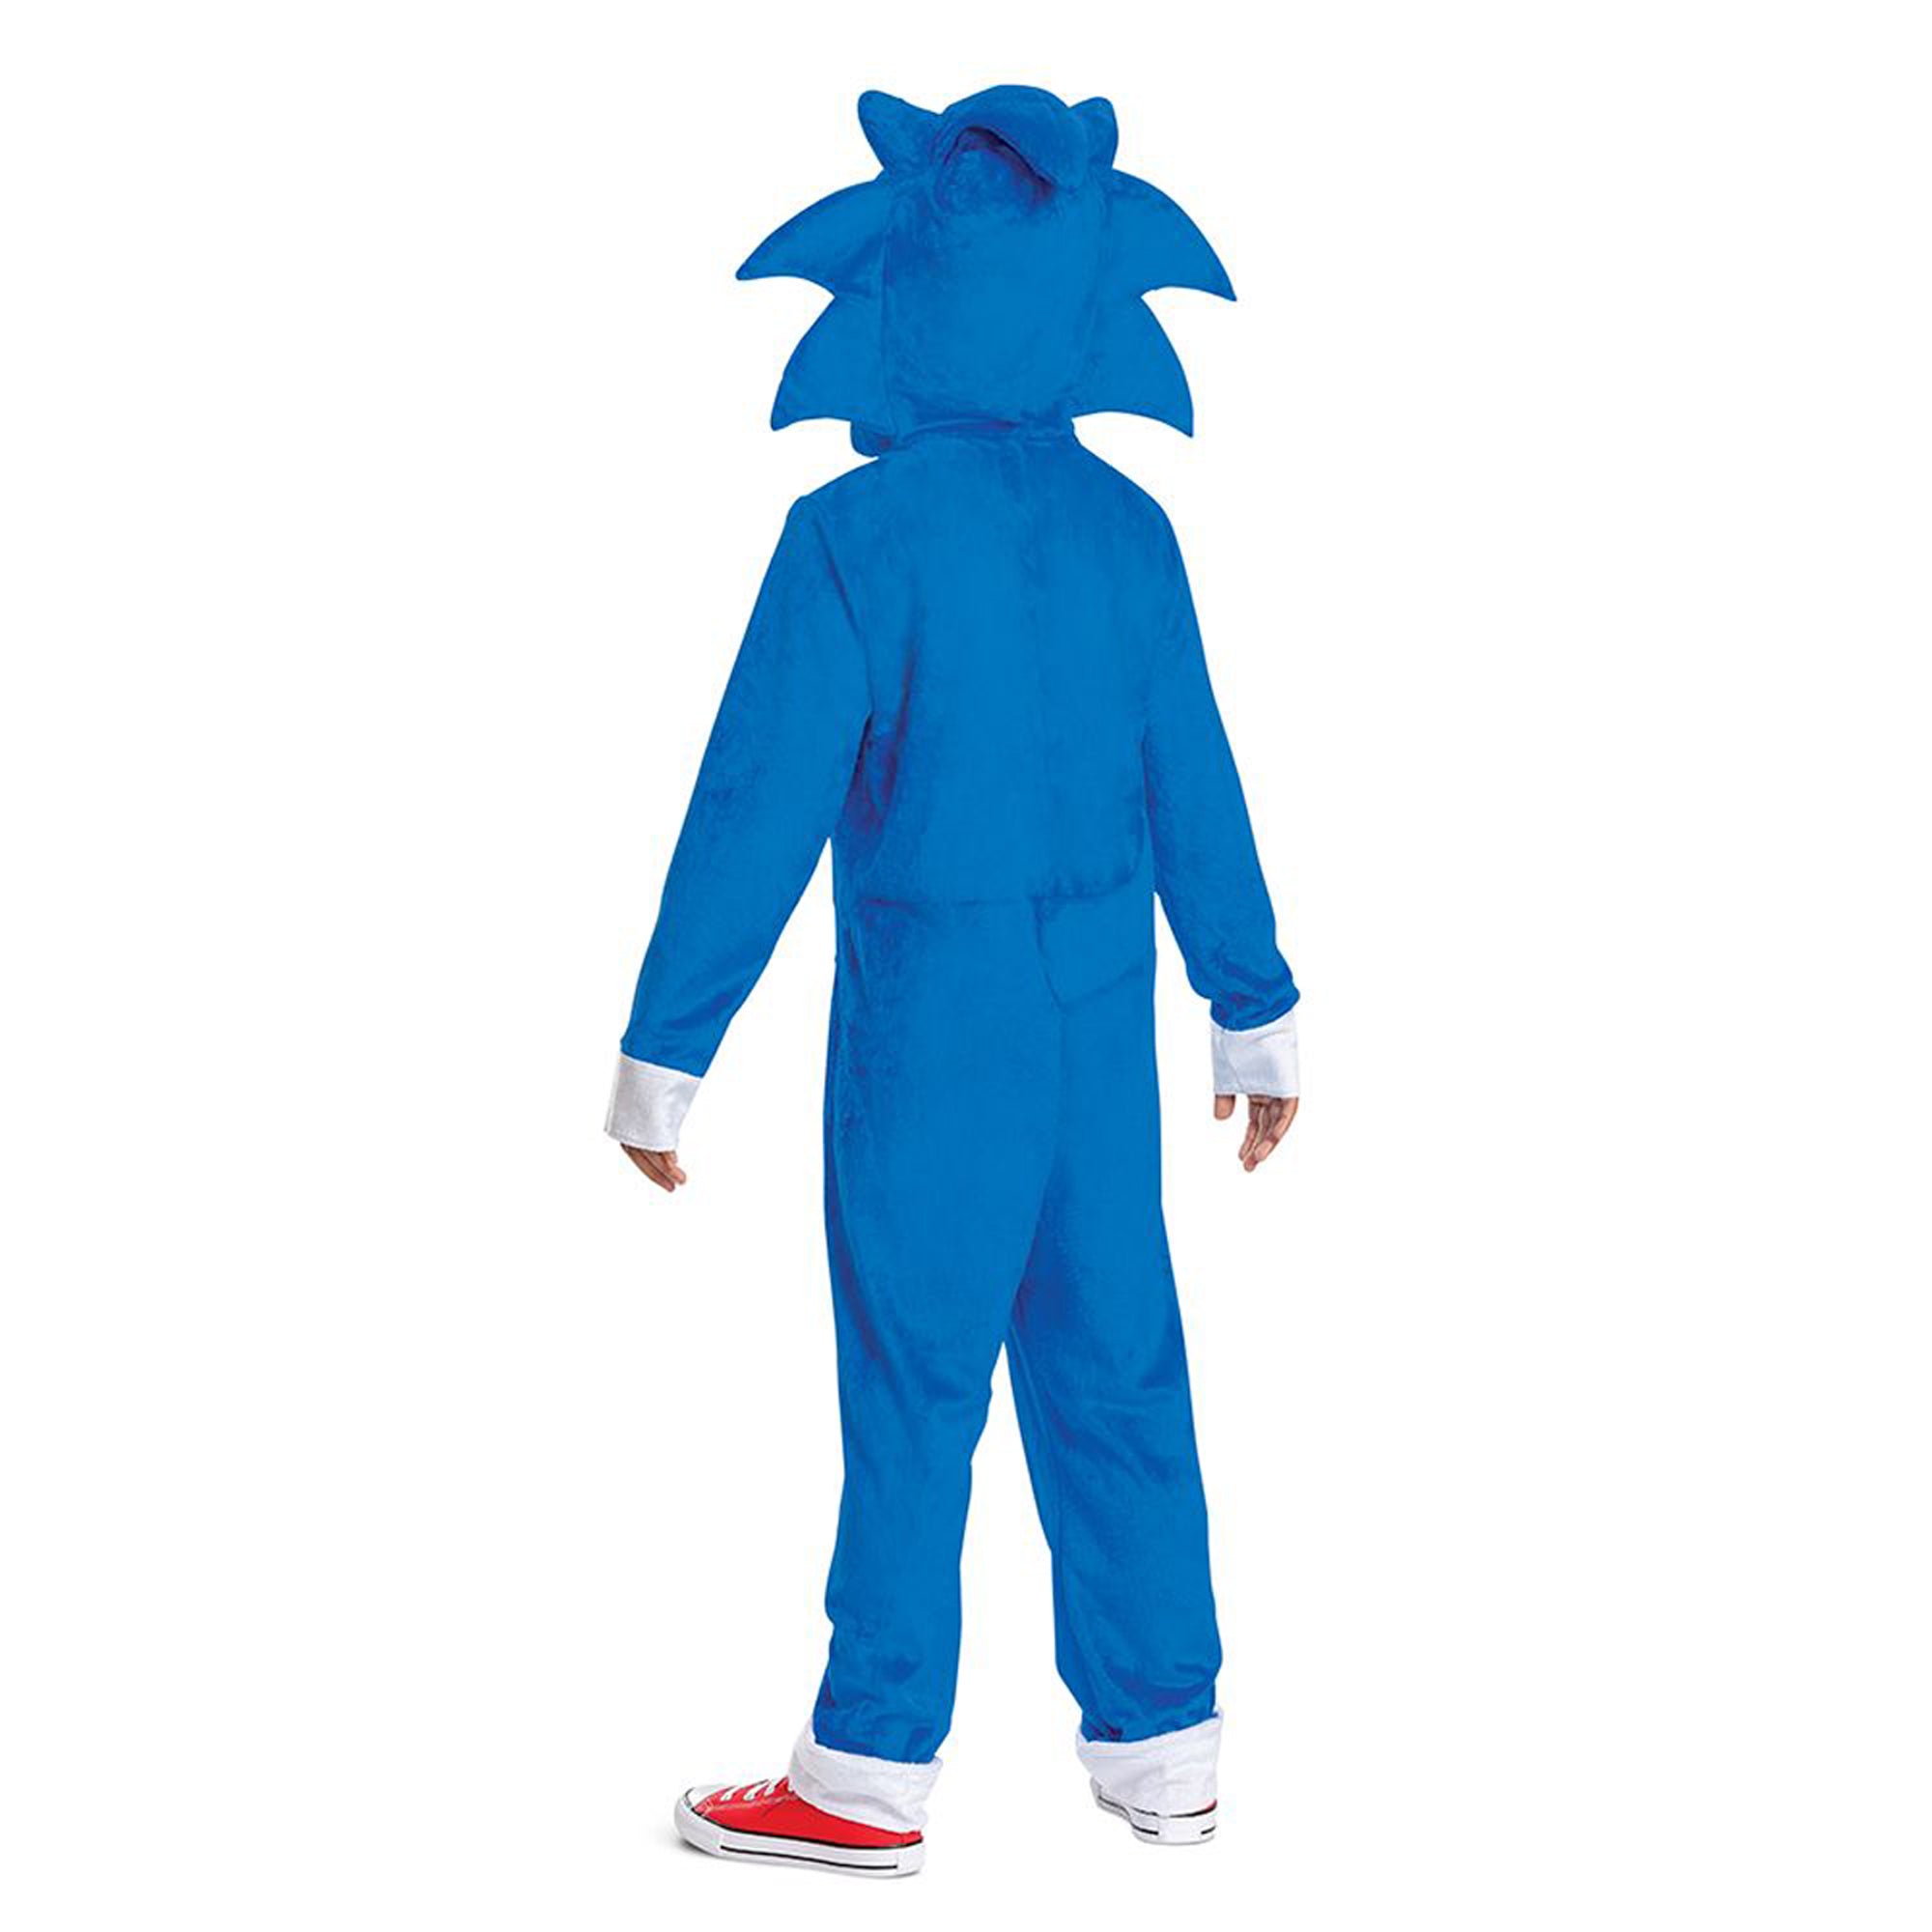 Costume de Sonic pour enfants, Sonic le Hérisson 2